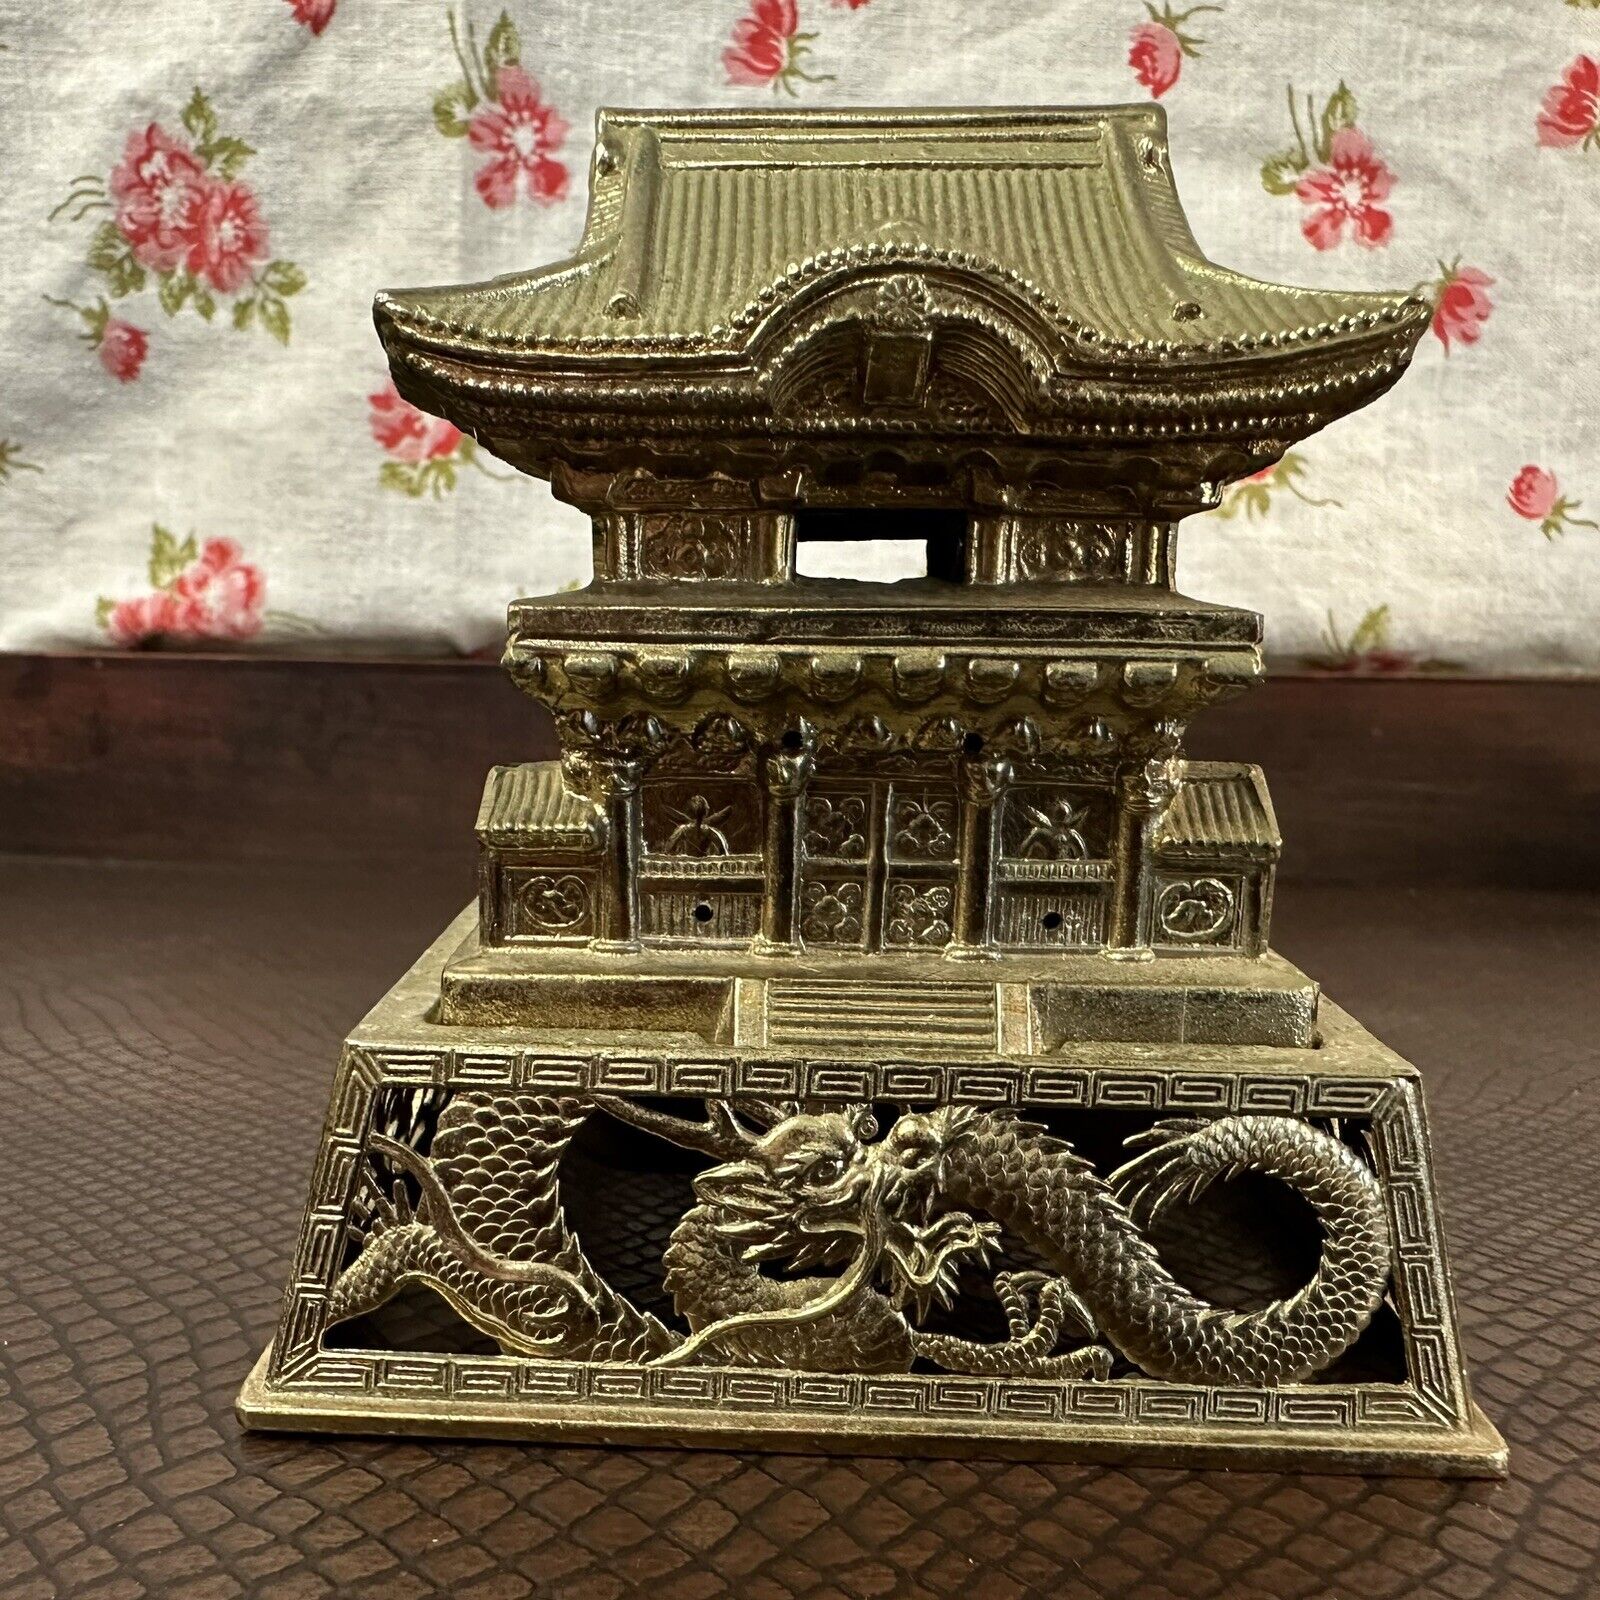 Vintage Japanese Golden Metal Pagoda Incense Burner With Dragon